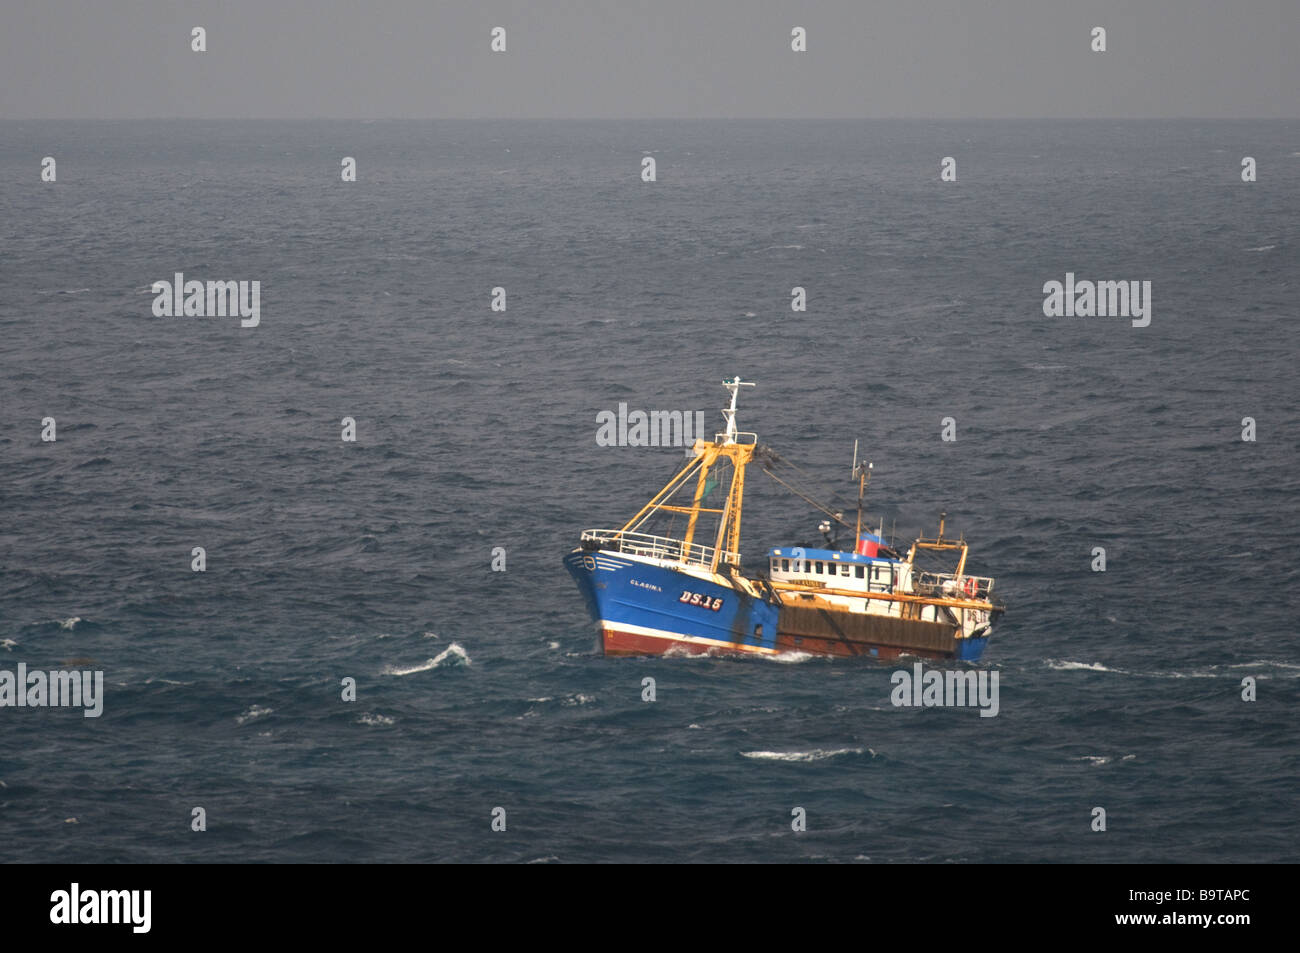 Chalutier de Clasina la pêche au large de la côte française dans le nord du golfe de Gascogne Septembre Banque D'Images